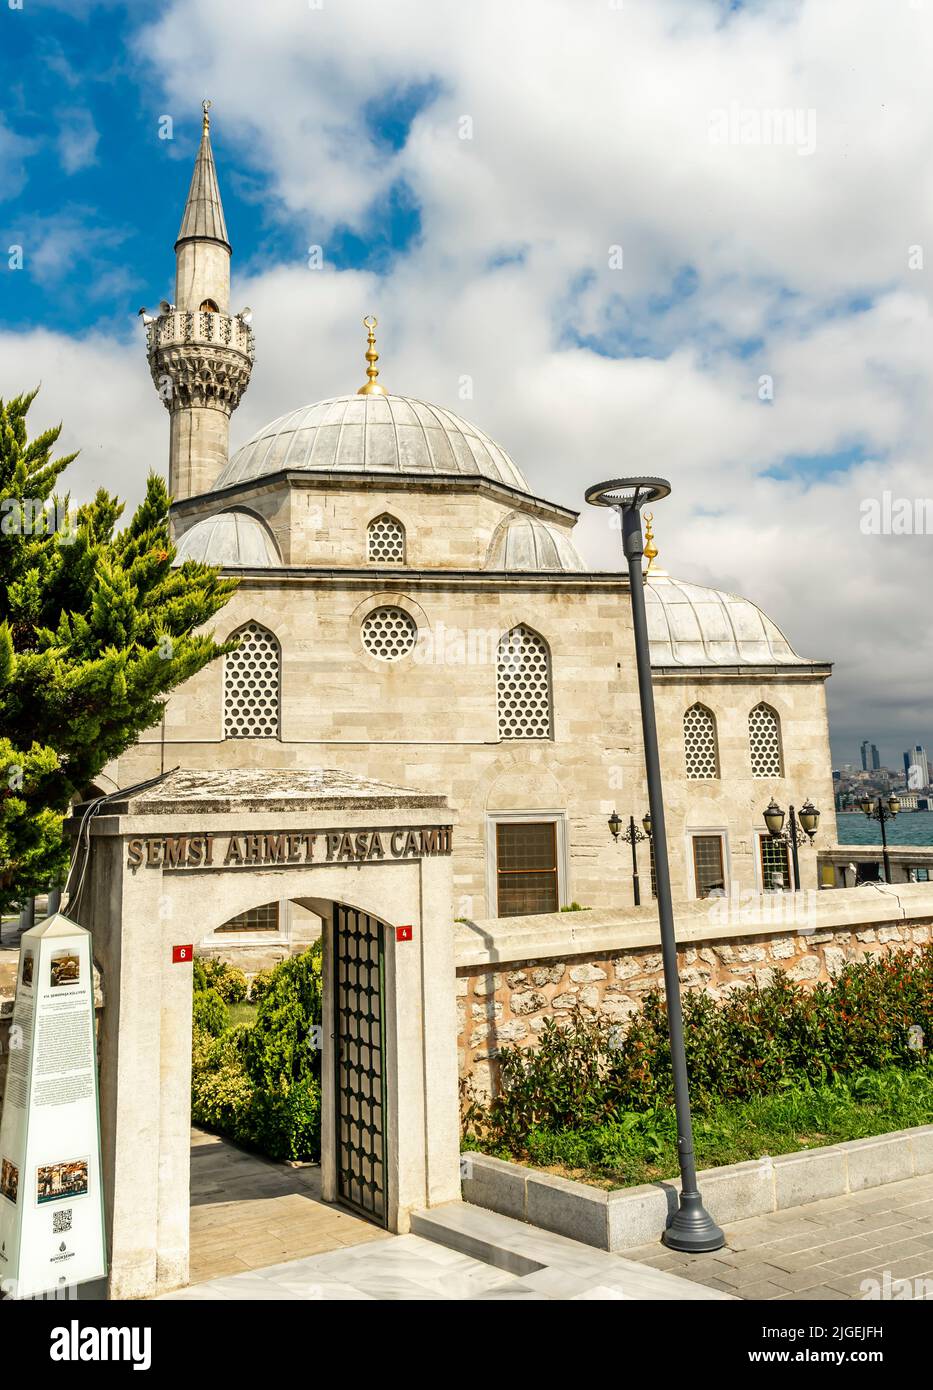 Shemsi-Pascha-Moschee ( Şemsi Ahmet Paşa Camii ) - osmanische Moschee aus dem 16.. Jahrhundert in Üsküdar, in Istanbul, Türkei. Gestaltet von Mimar Sinan Stockfoto